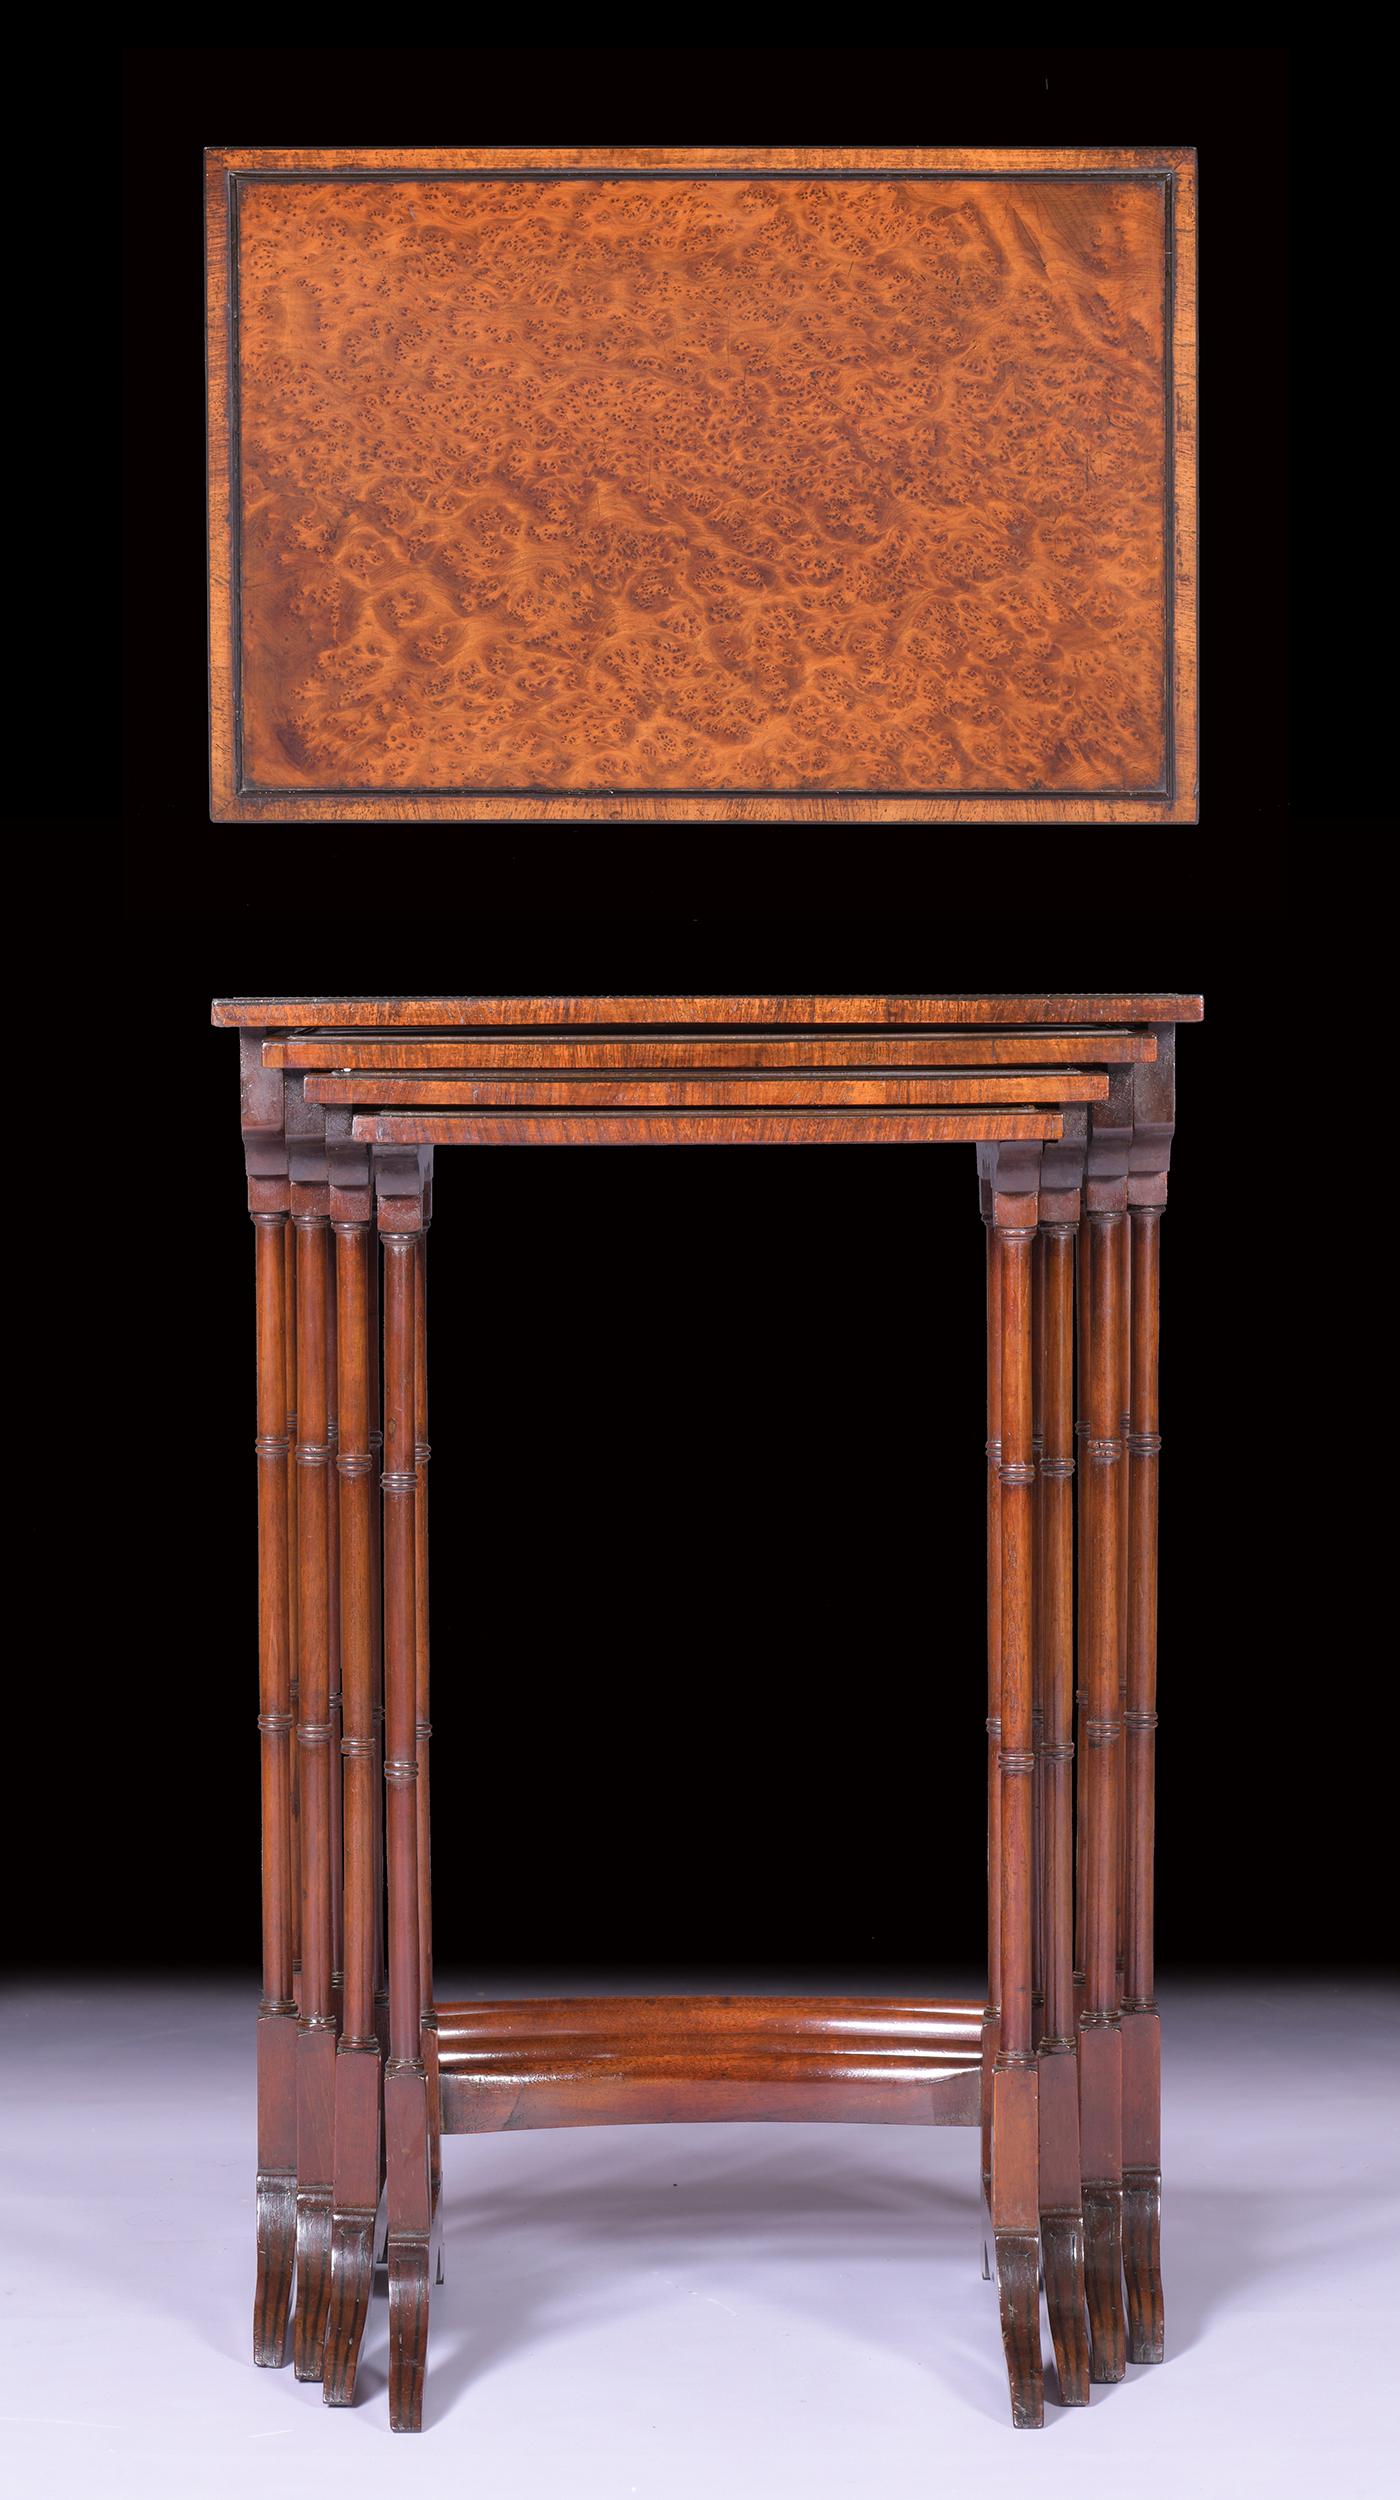 Ein sehr schönes und attraktives Nest von Tischen aus Amboyna-Holz, von abgestufter rechteckiger Größe, auf Ring gedreht Säulen auf Tressel Ende unterstützt durch Bahre verbunden erhöht.

CIRCA 1828

Englisch